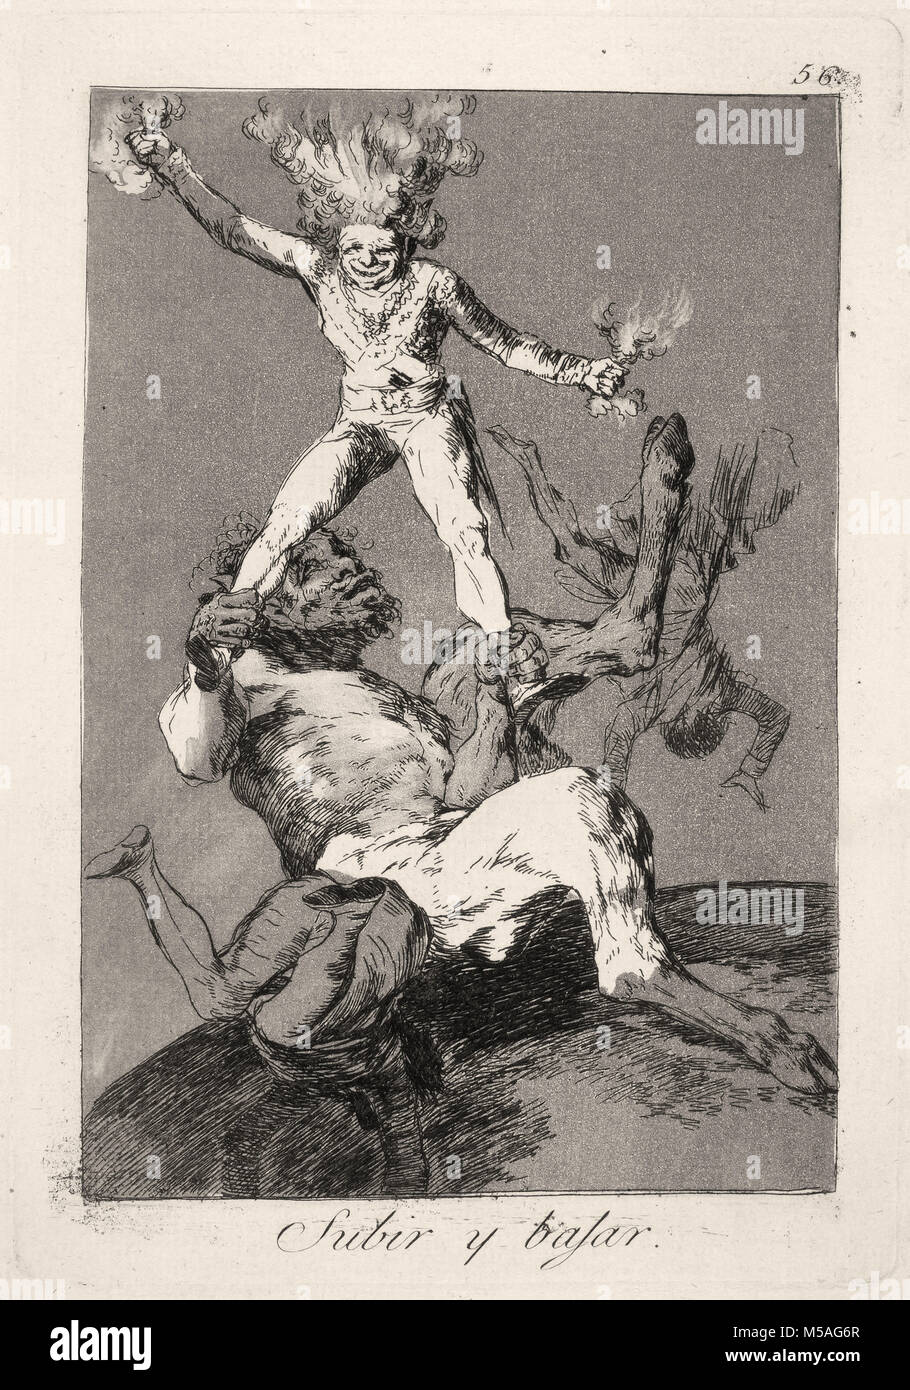 Francisco de Goya - Los Caprichos - No. 56 - Subir y bajar Stock Photo